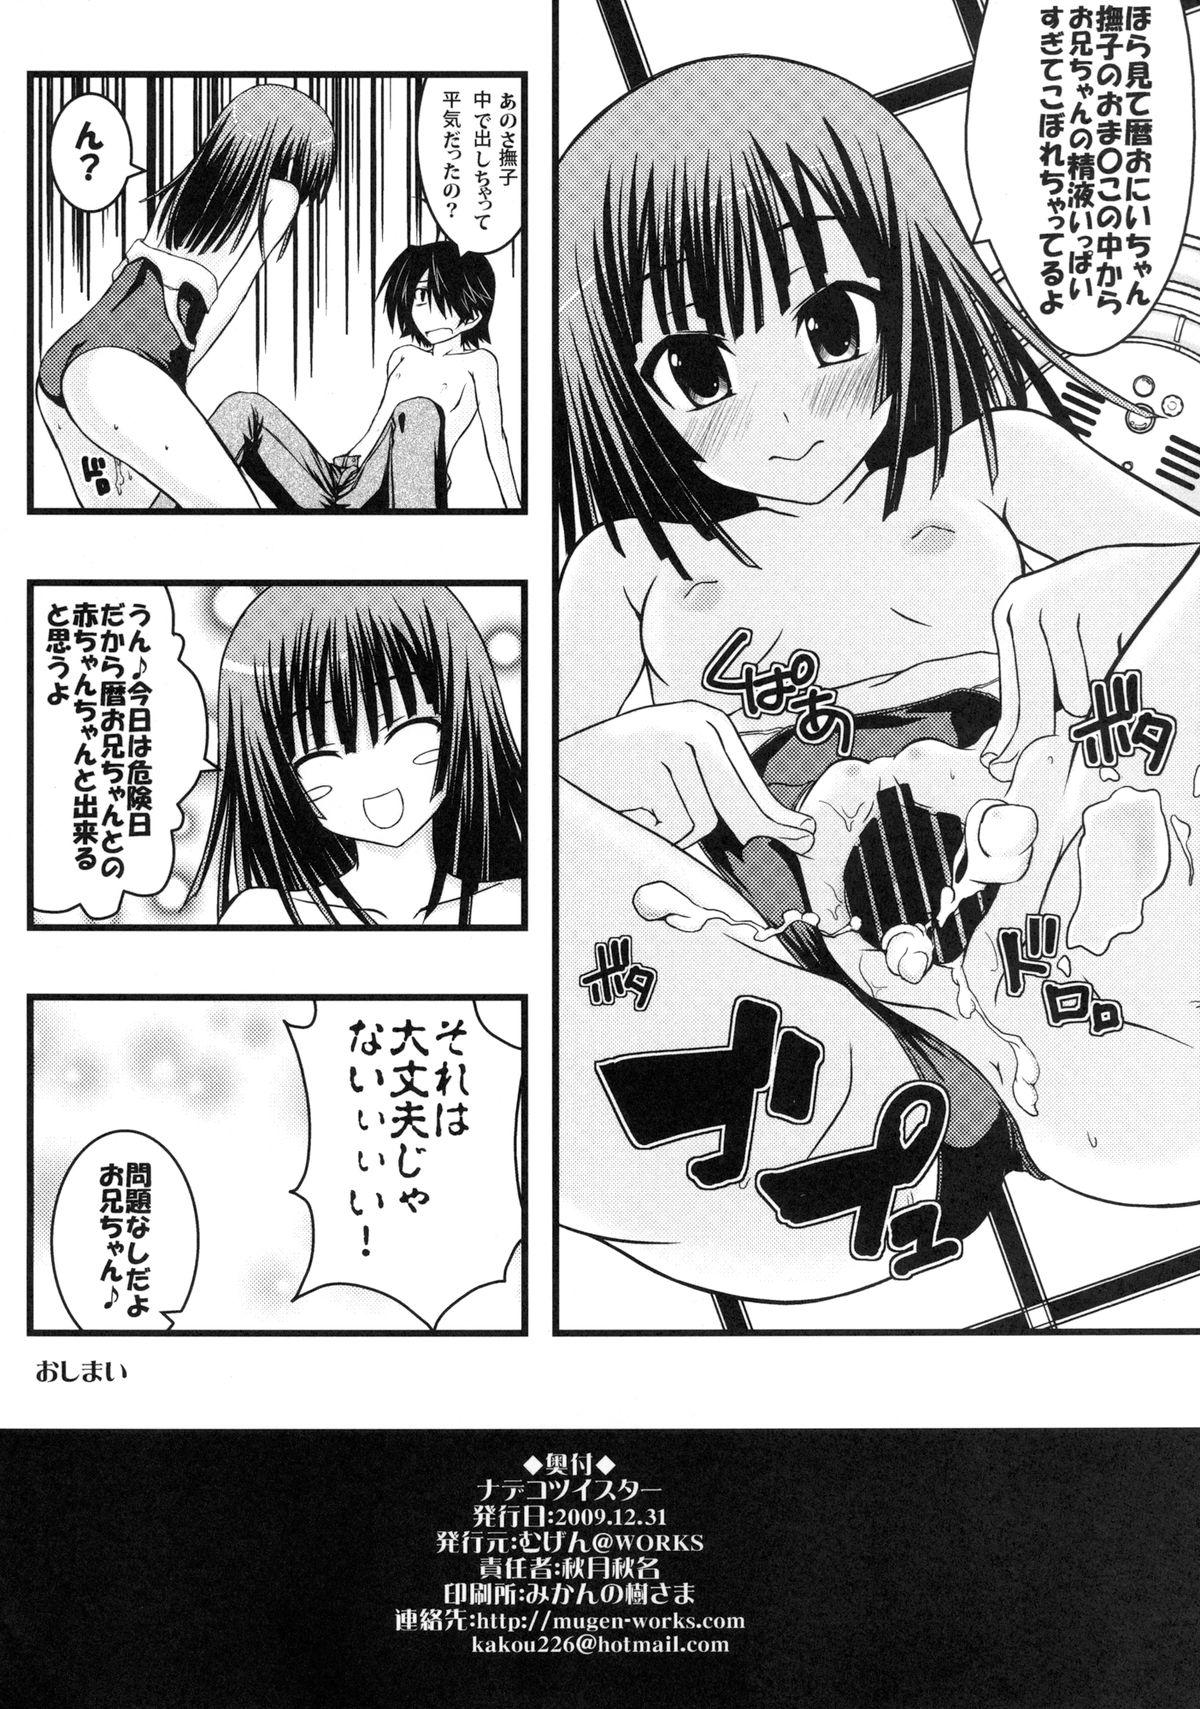 Slut Nadeko Twister - Bakemonogatari Face - Page 22